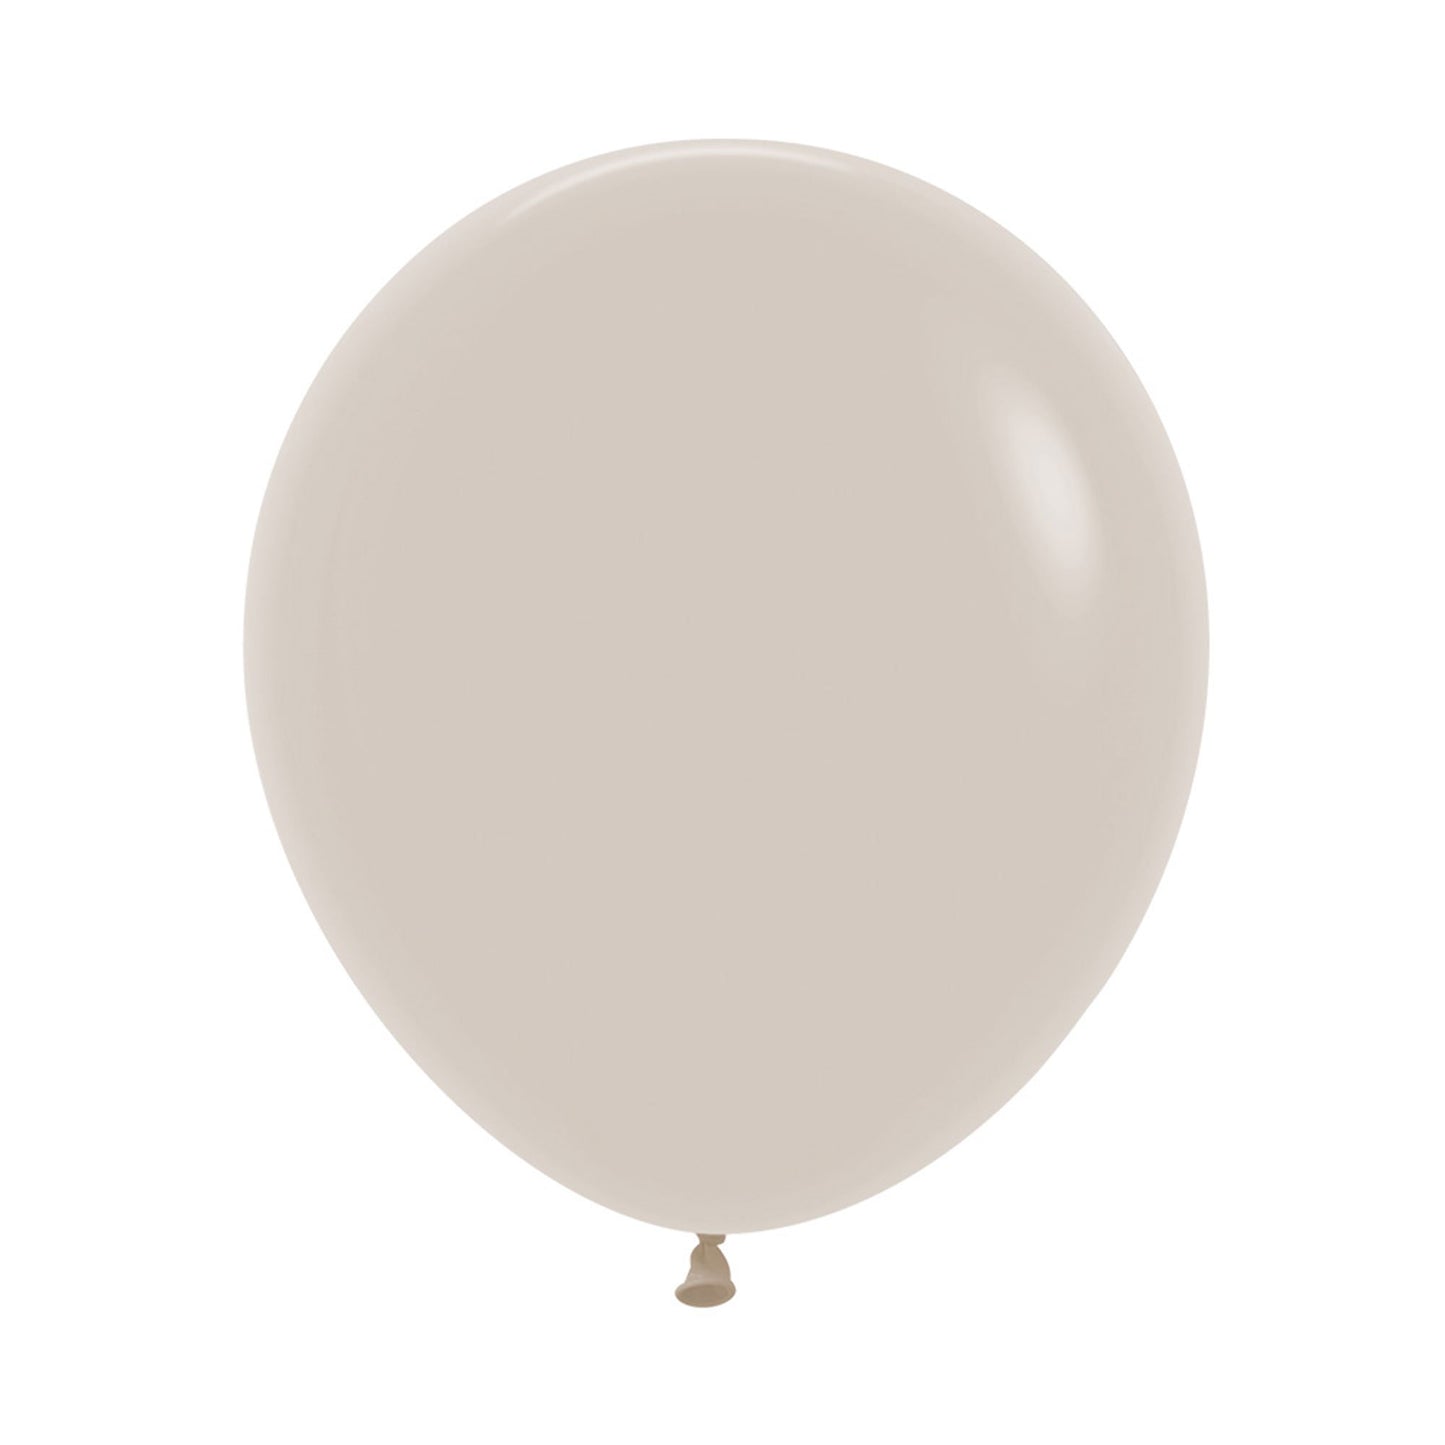 Sempertex 45cm Fashion White Sand Latex Balloons 071, 6PK